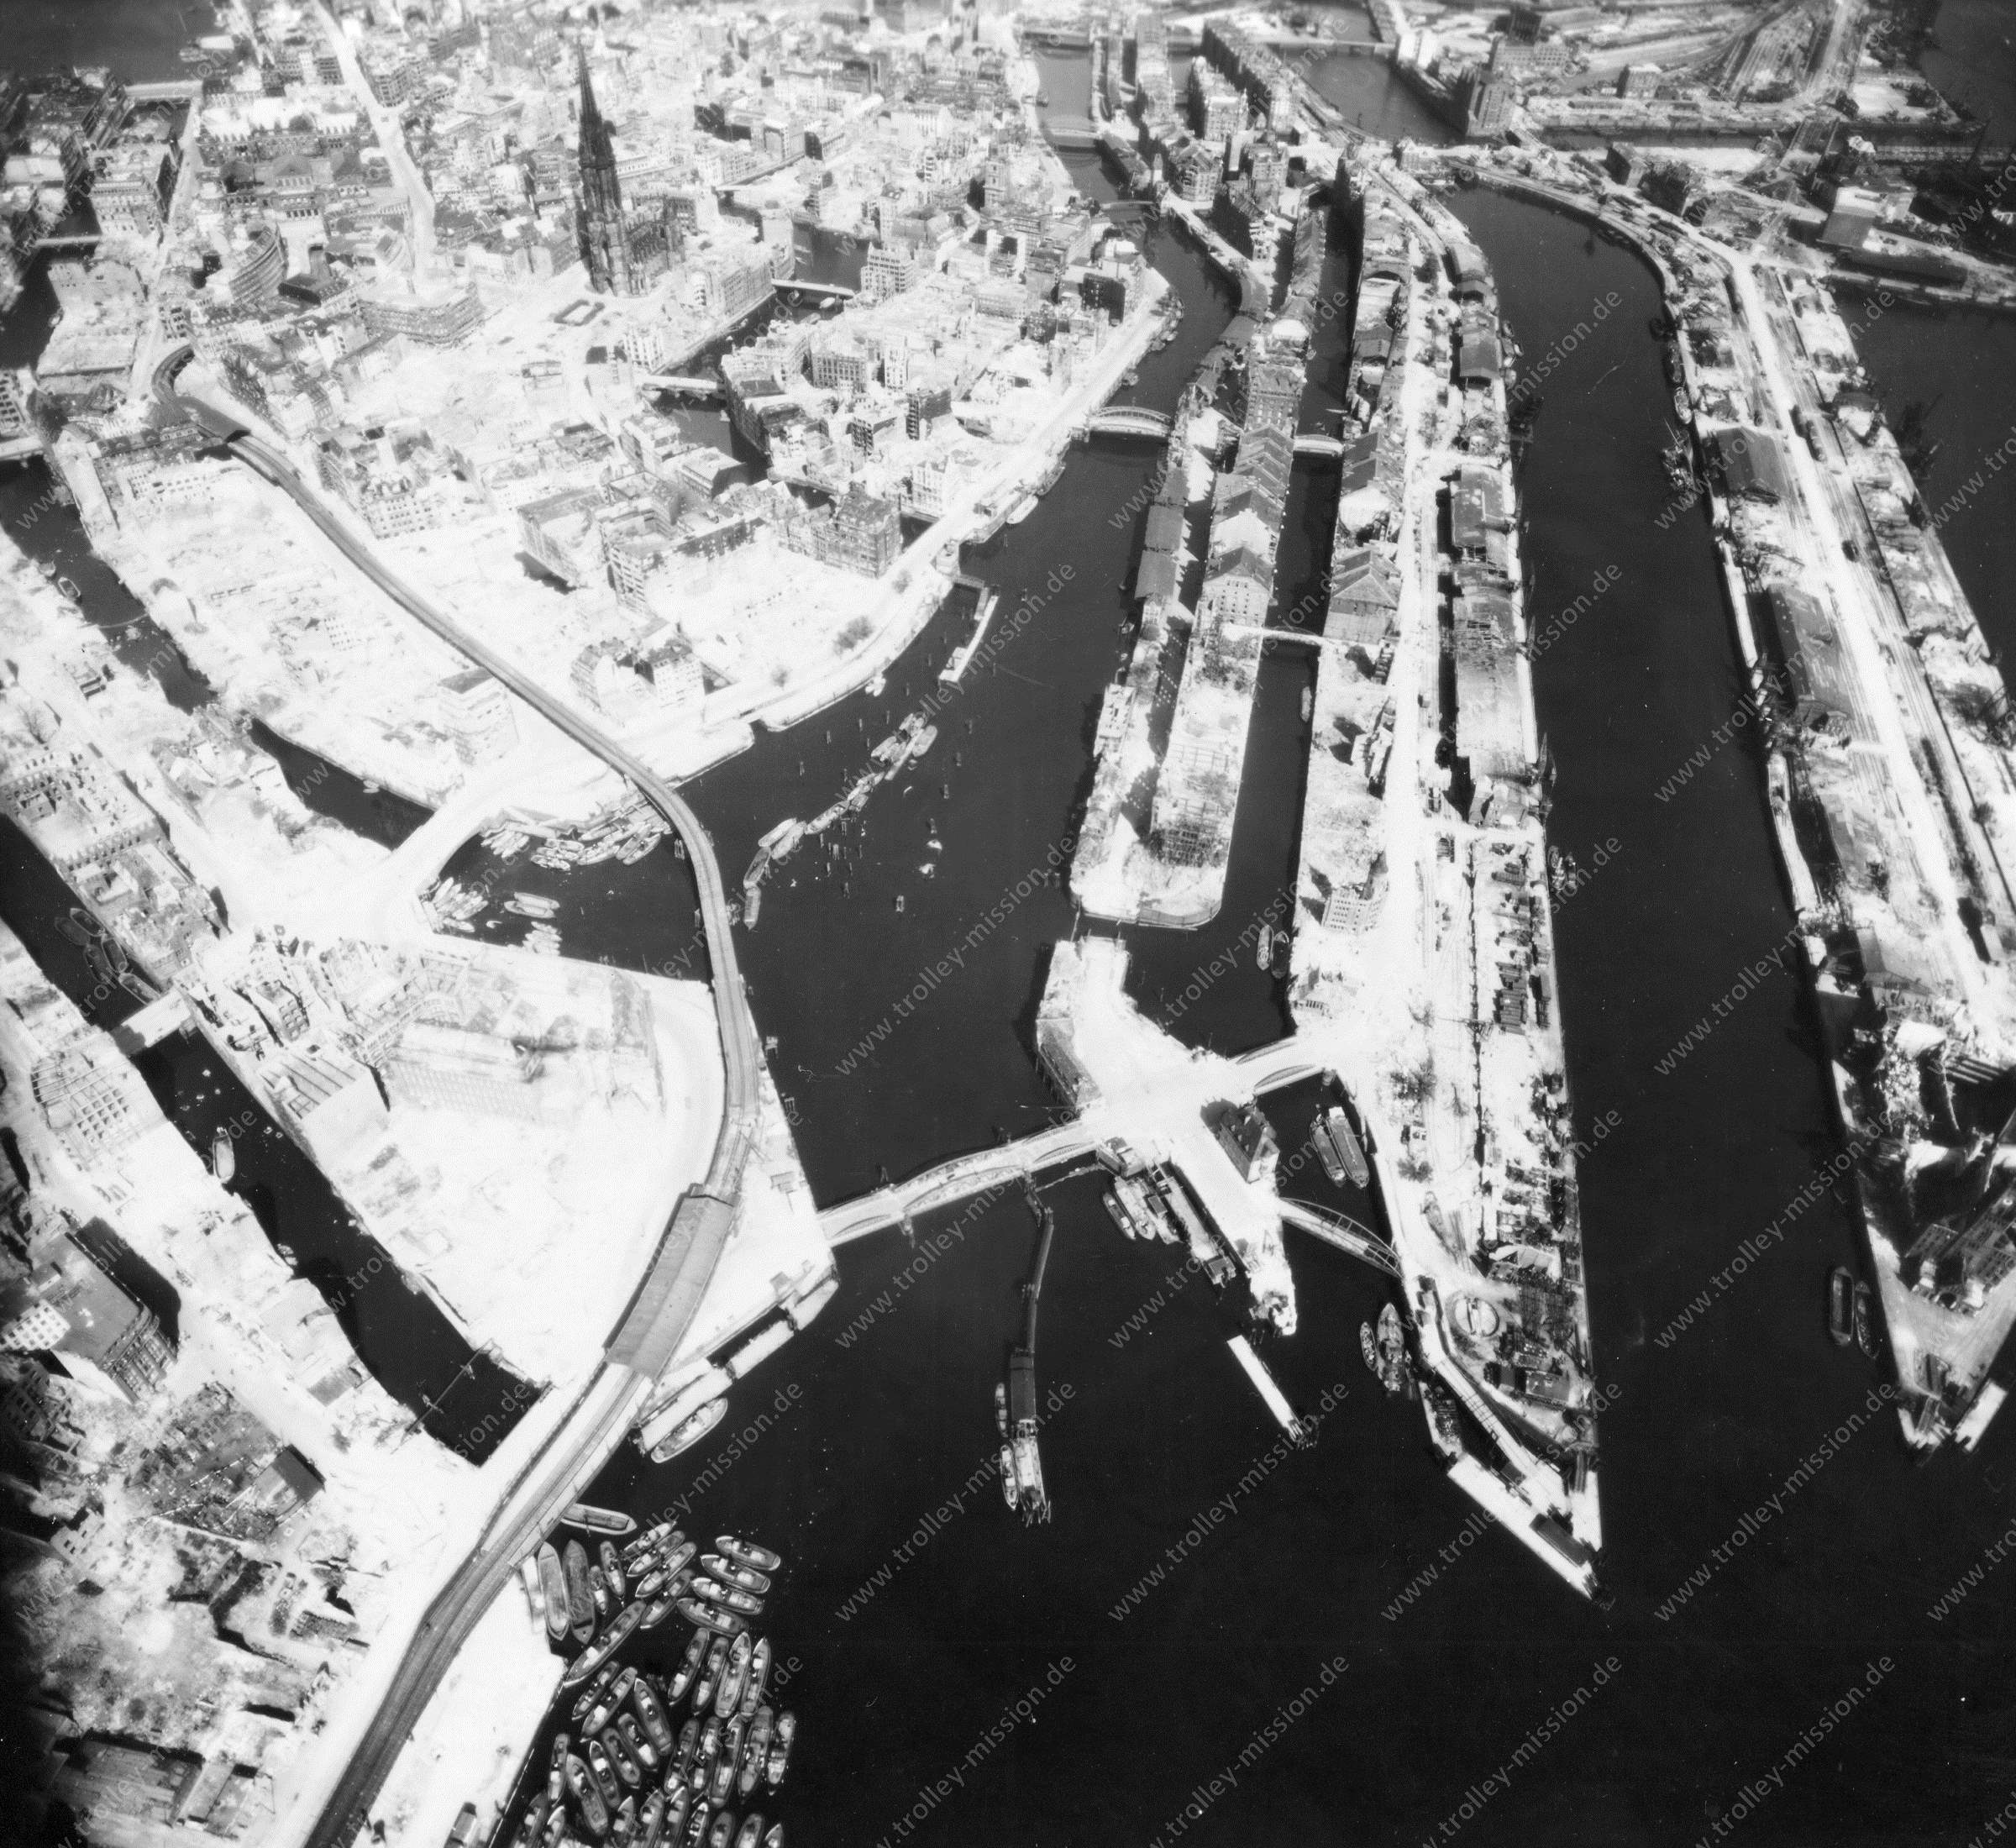 Luftbild von Hamburg und Hafen am 12. Mai 1945 - Luftbildserie 13/19 der US Air Force